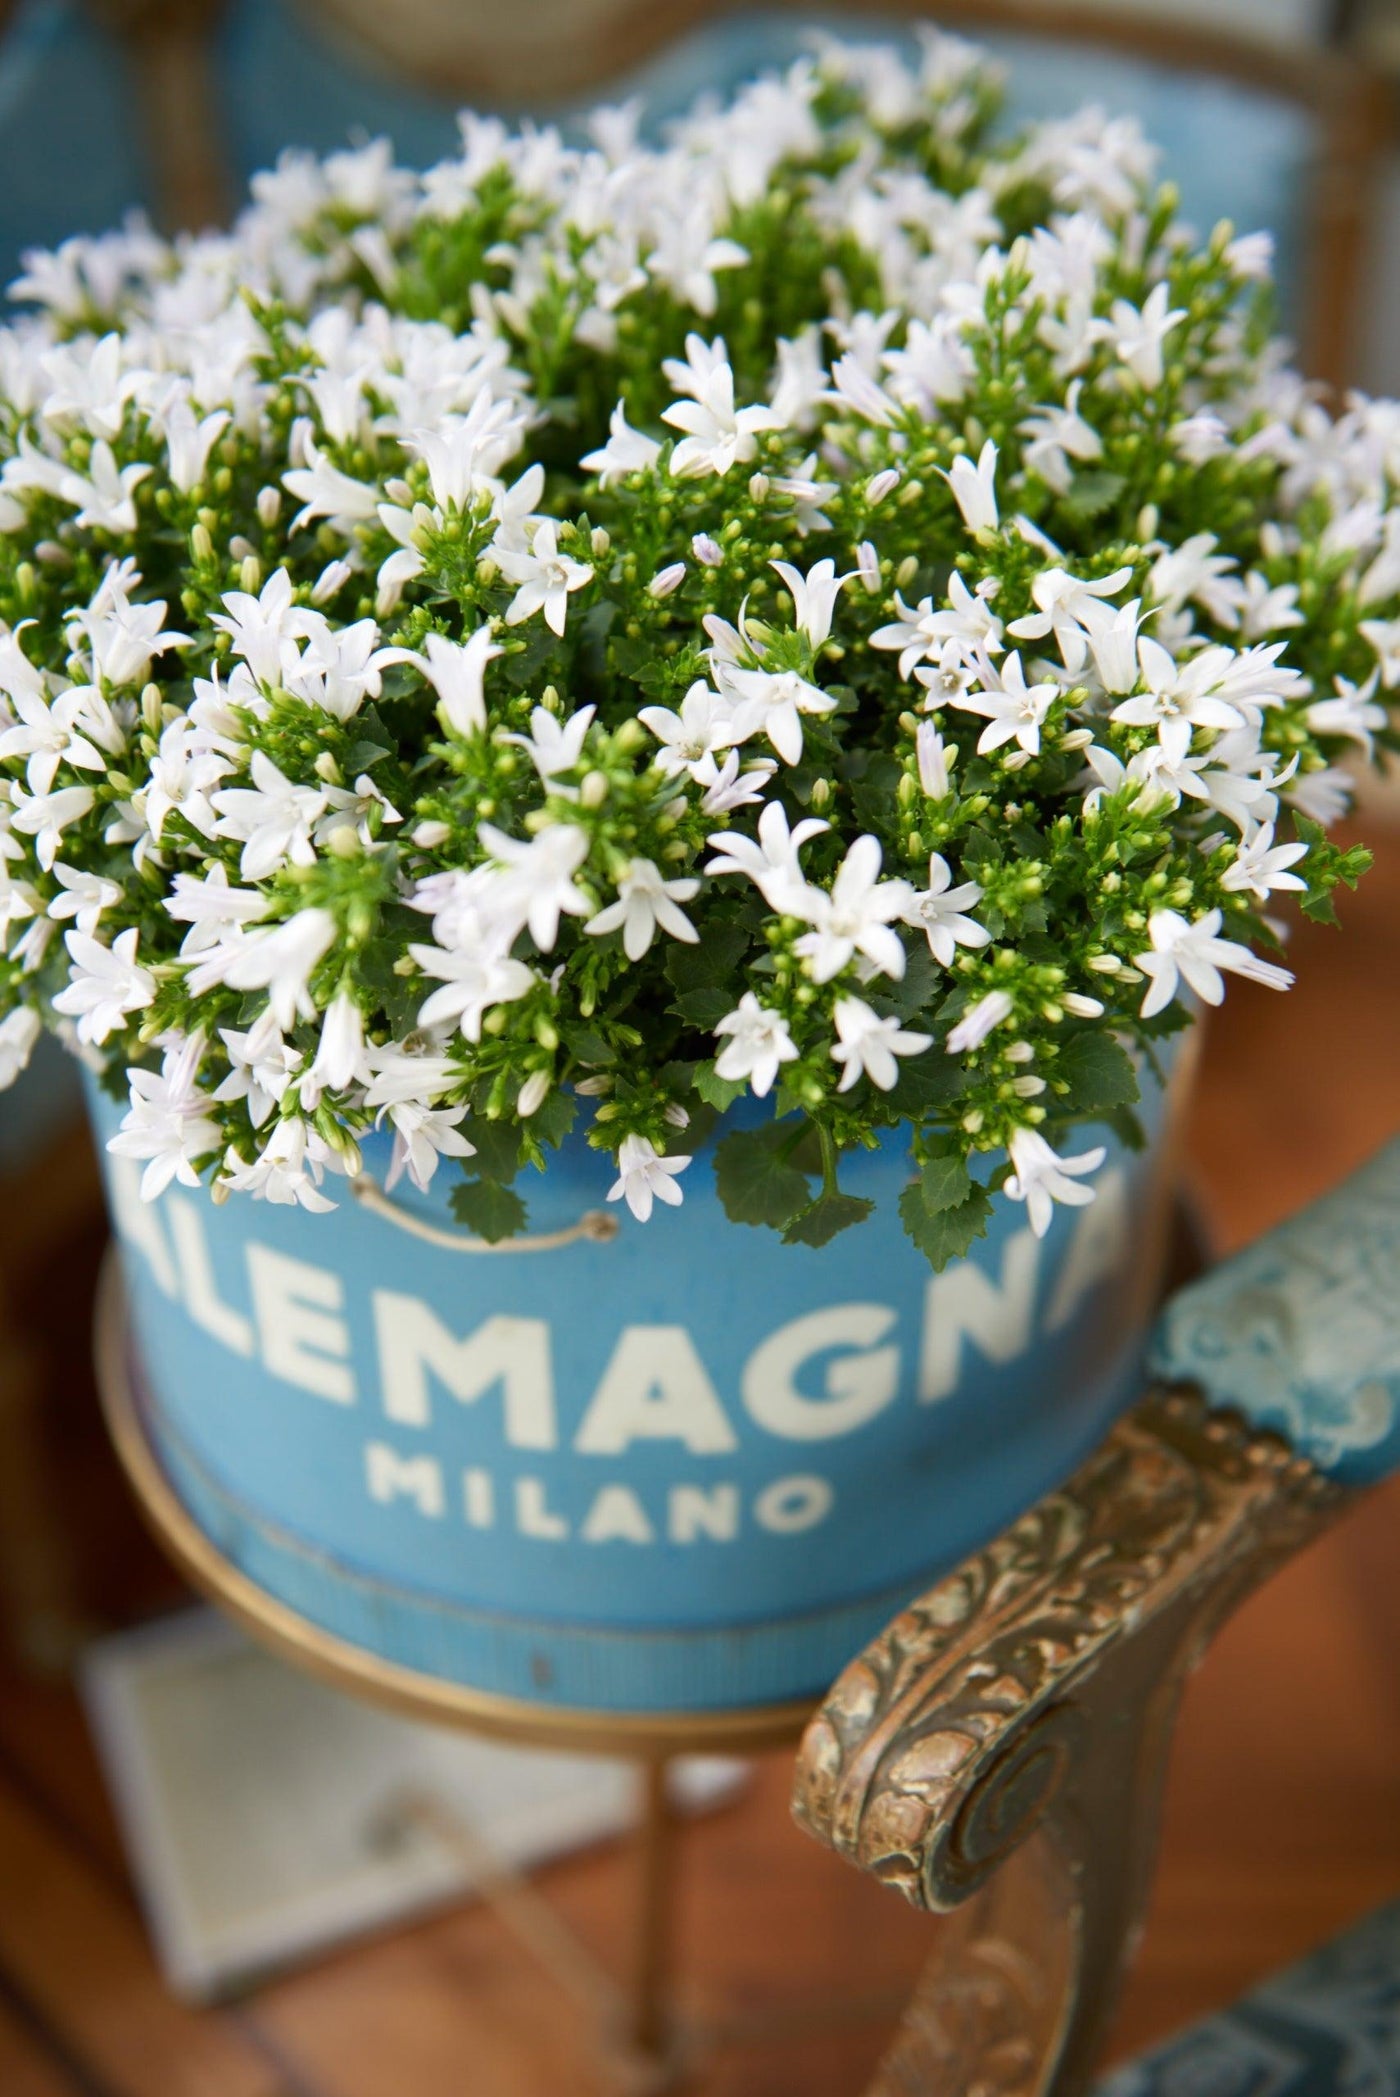 Glockenblume (Campanula Ambella White Portenschlagiana) - Nachhaltige Zimmerpflanzen kaufen Botanicly Foto 3